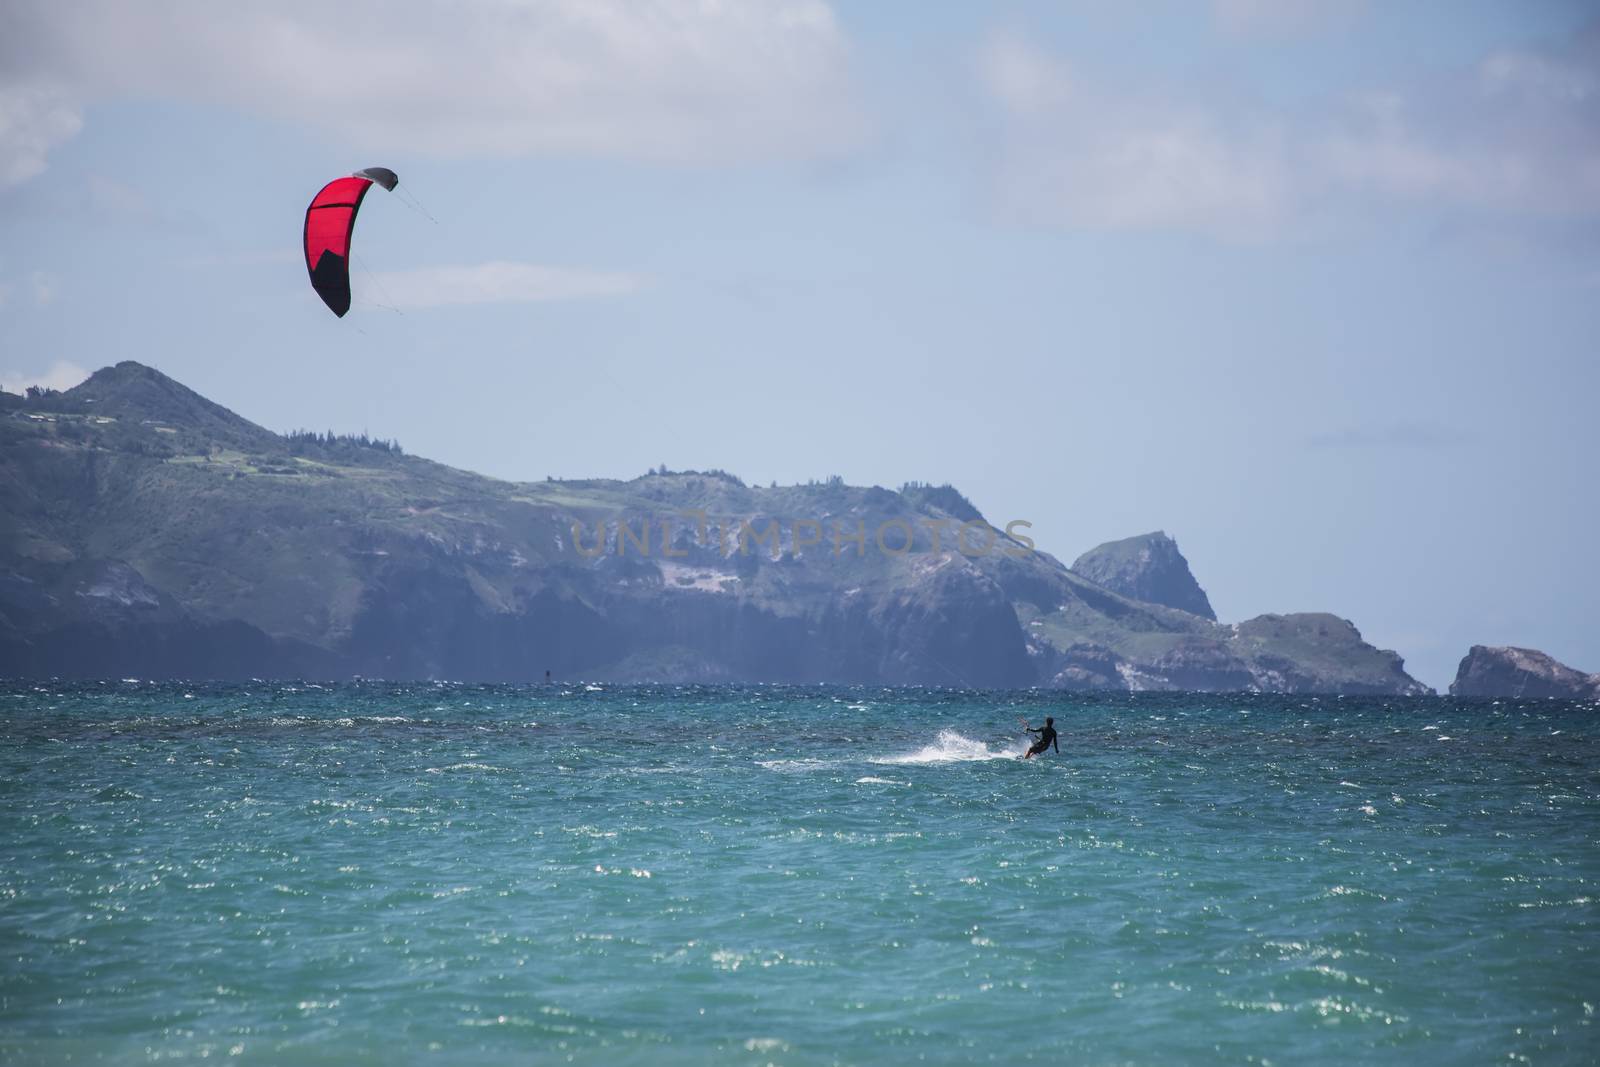 Maui kite surfer from Kanaha Beach Park